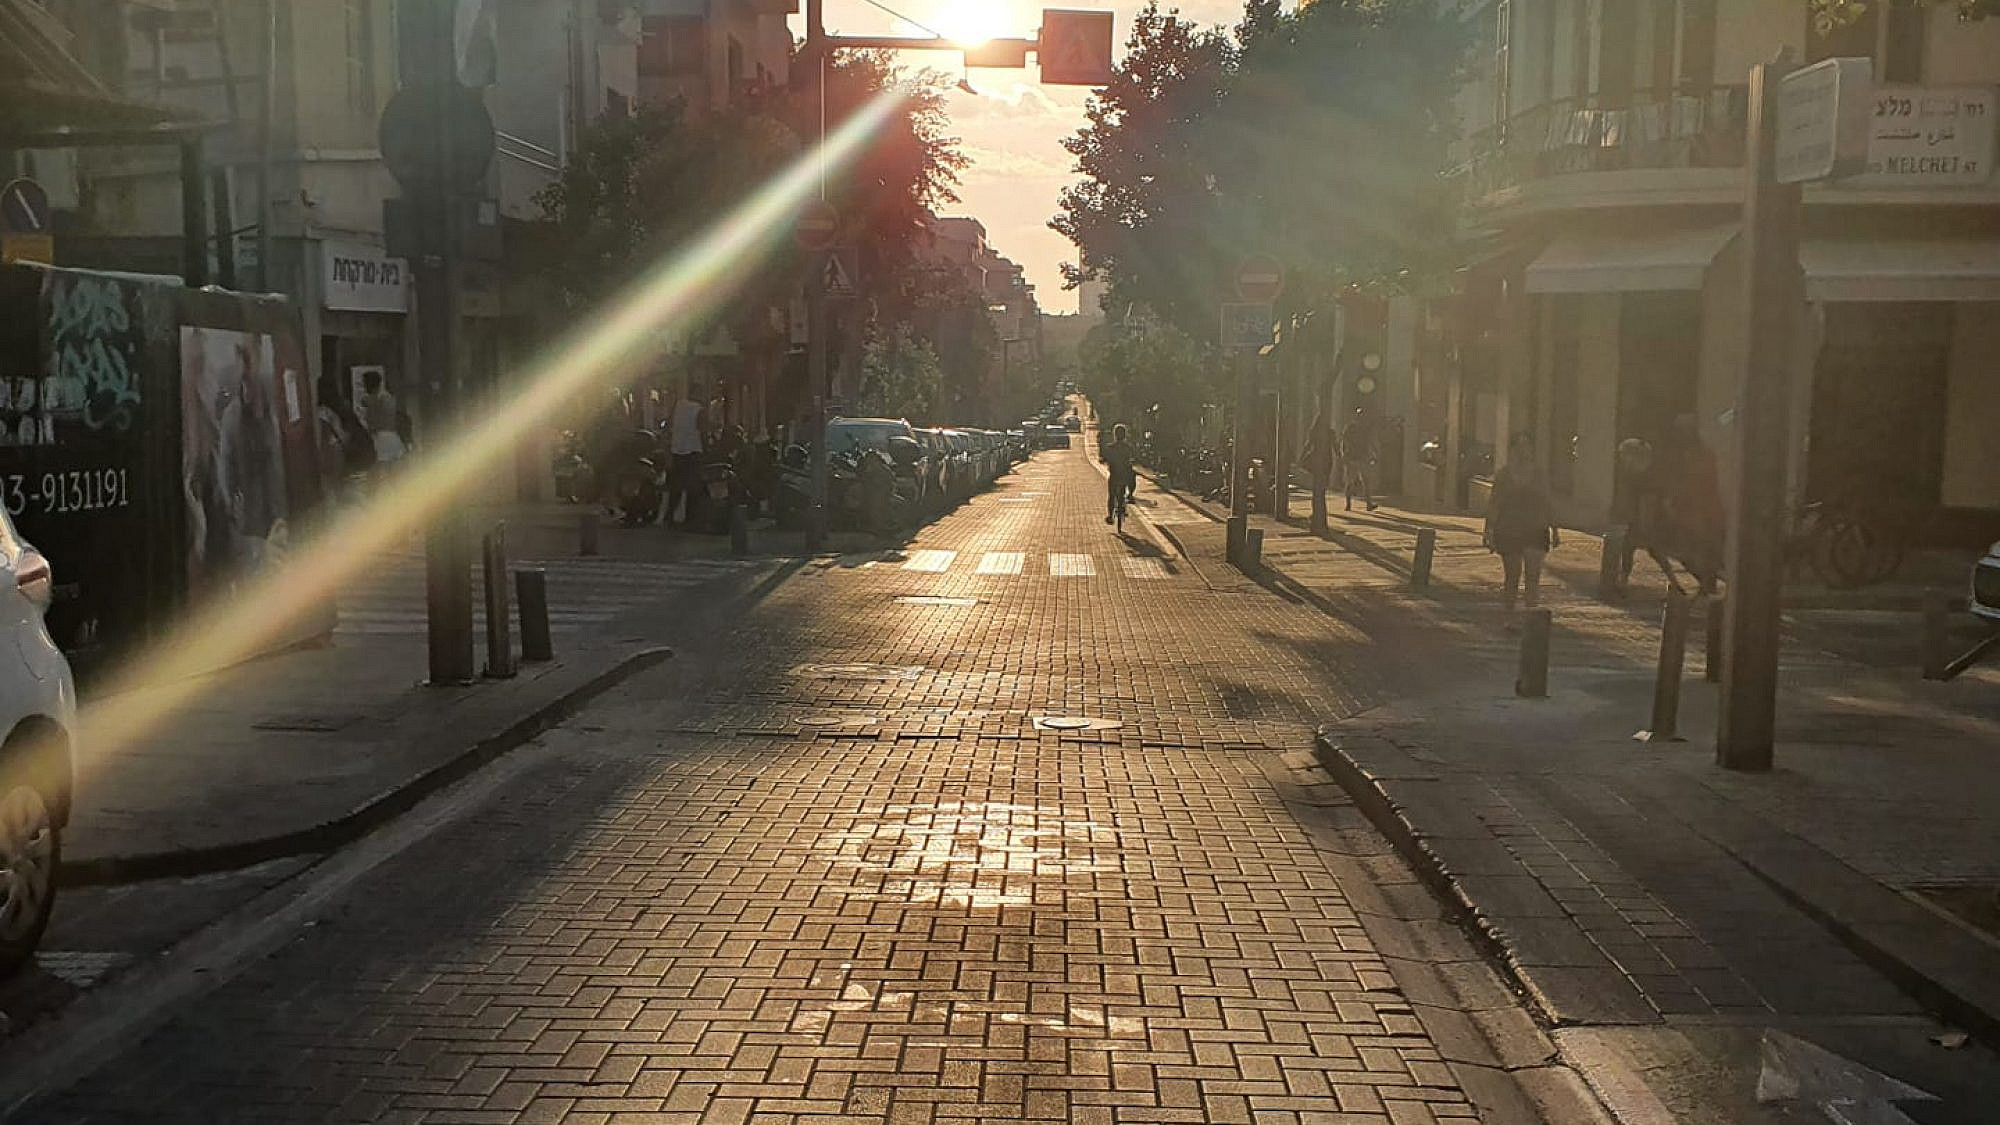 שעת הזהב של תל אביב. השמש שוקעת, רחוב שינקין זורח (צילום: מערכת טיים אאוט)